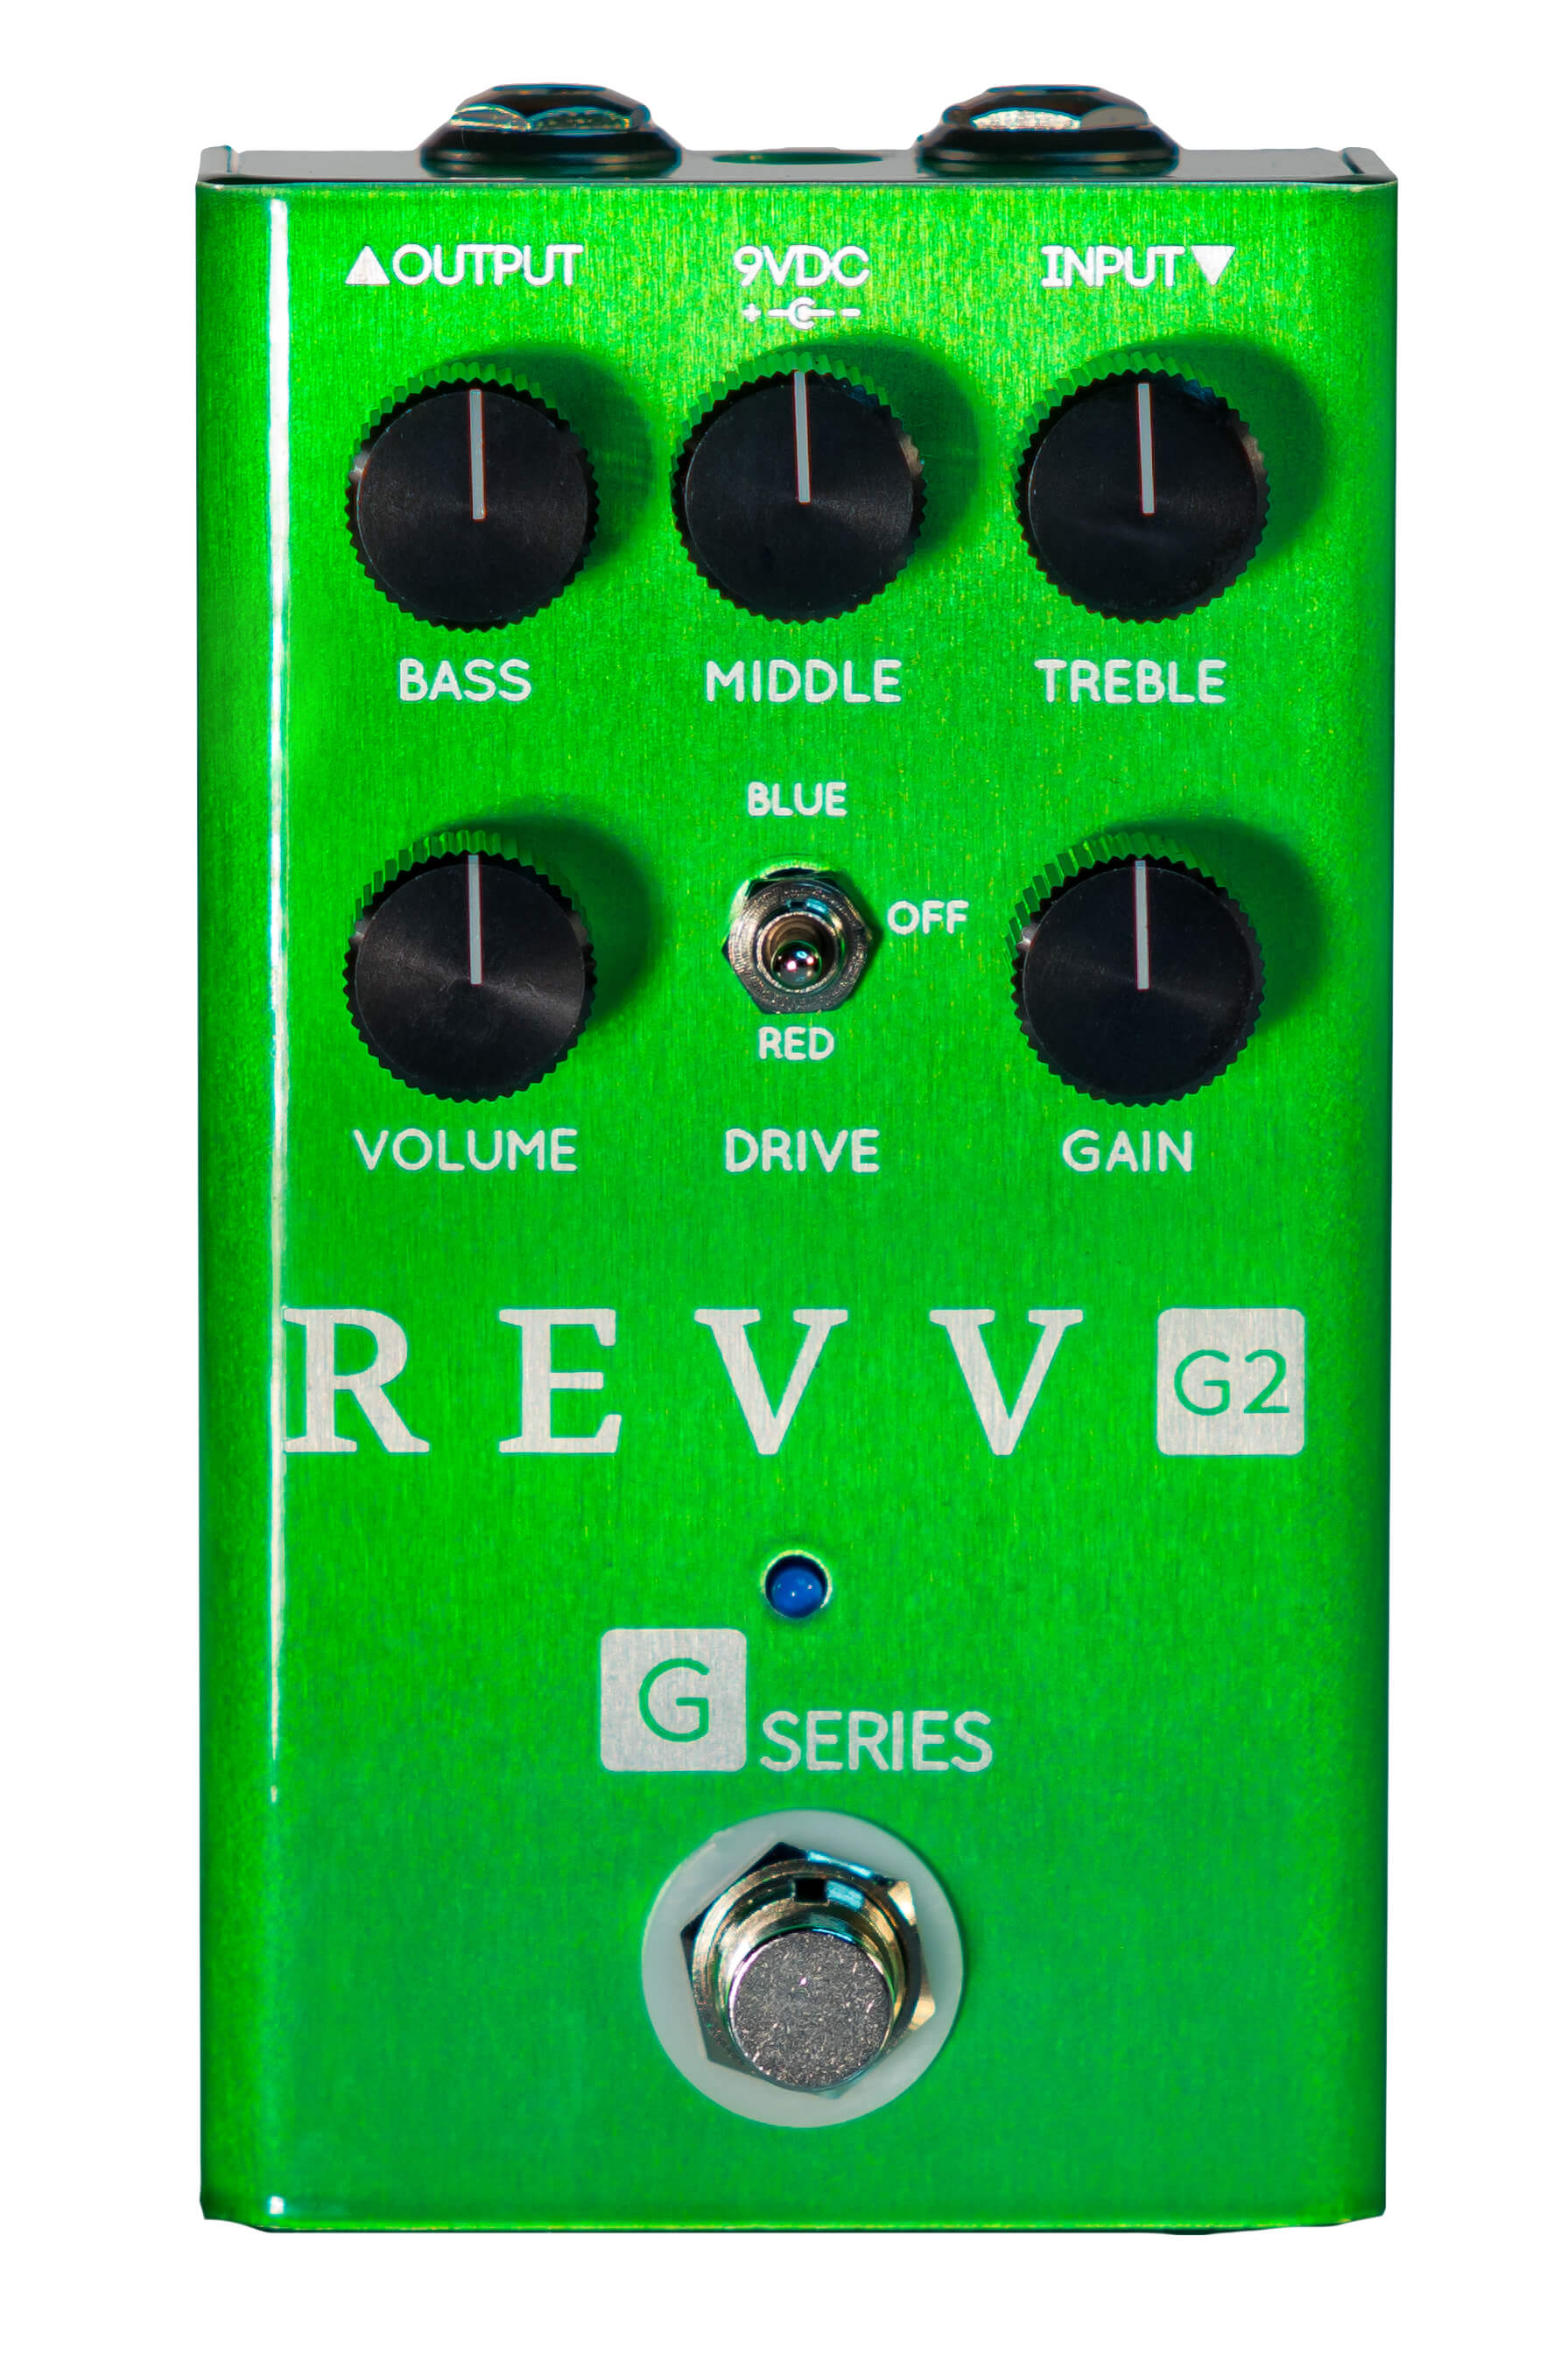 Revv G2 Pedal Review